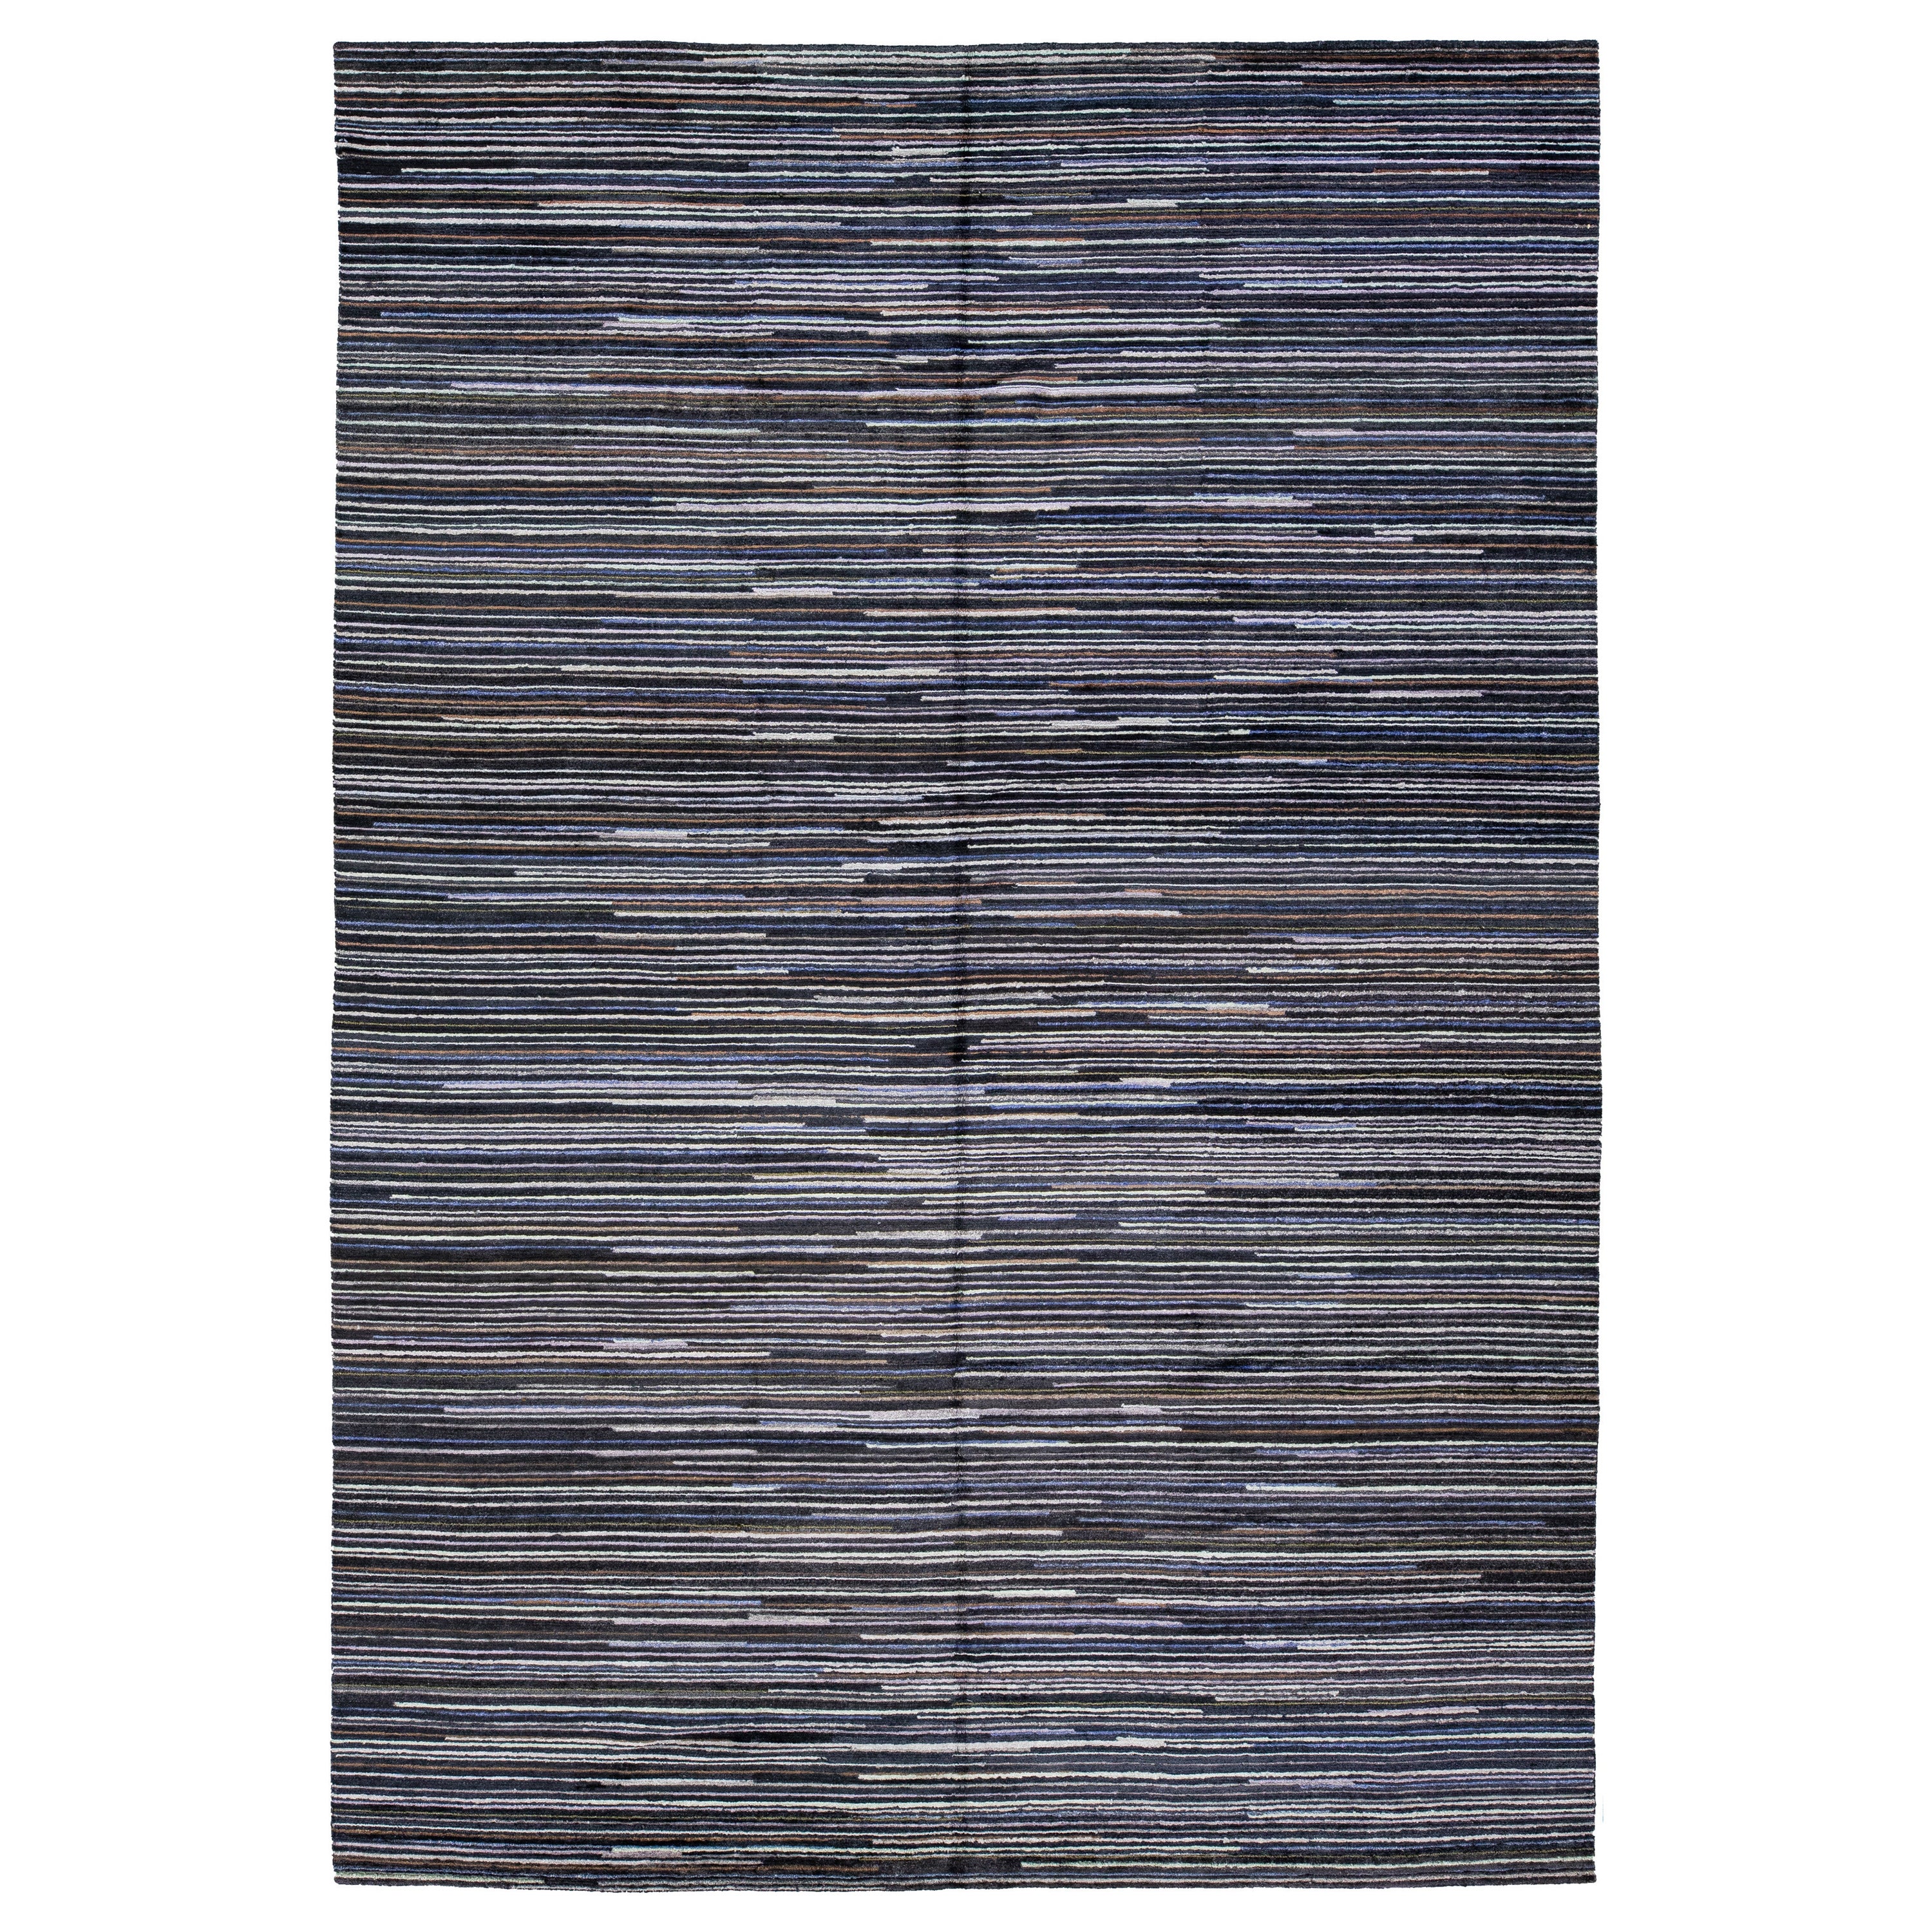 Moderner indischer Teppich aus schwarzer und grauer Wolle mit gestreiftem Design